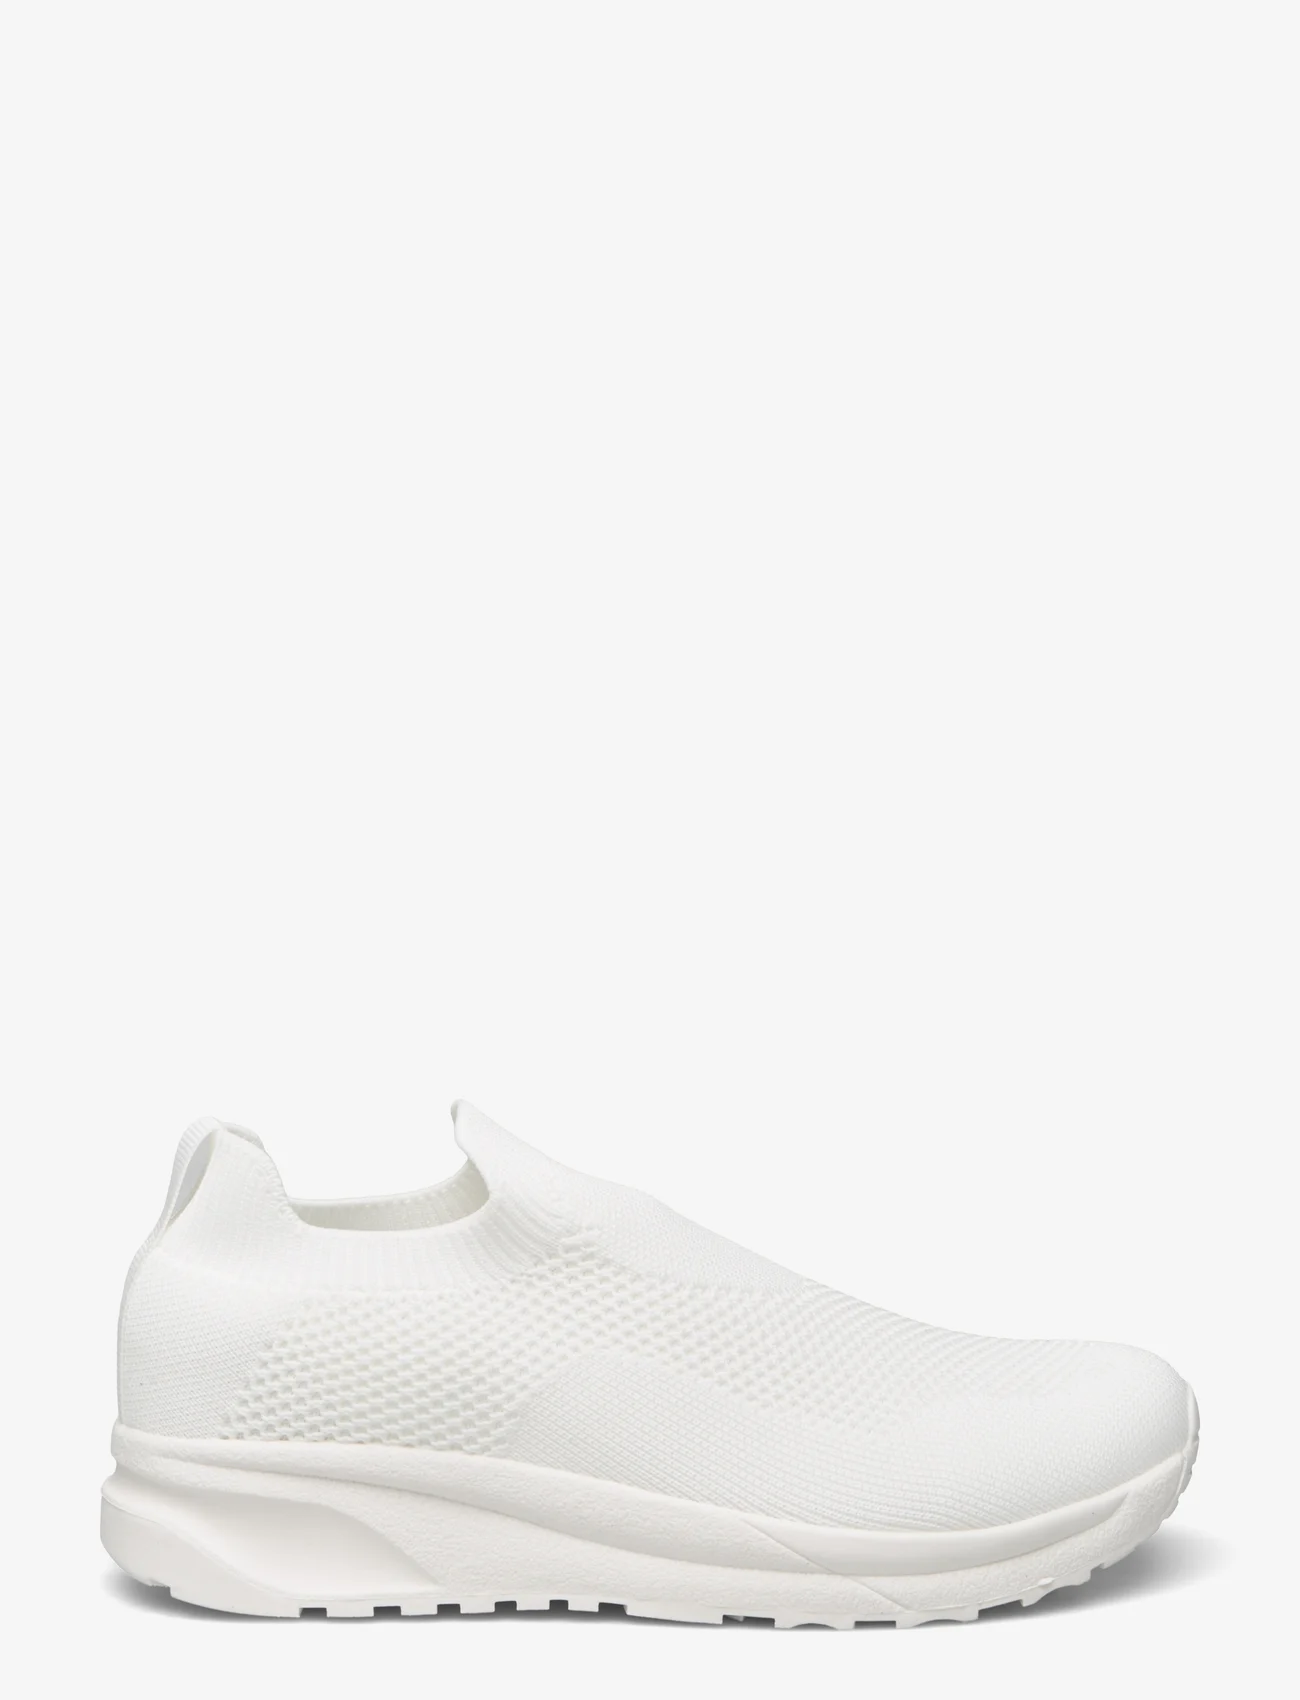 Exani - ELLA - slip-on sneakers - white - 1